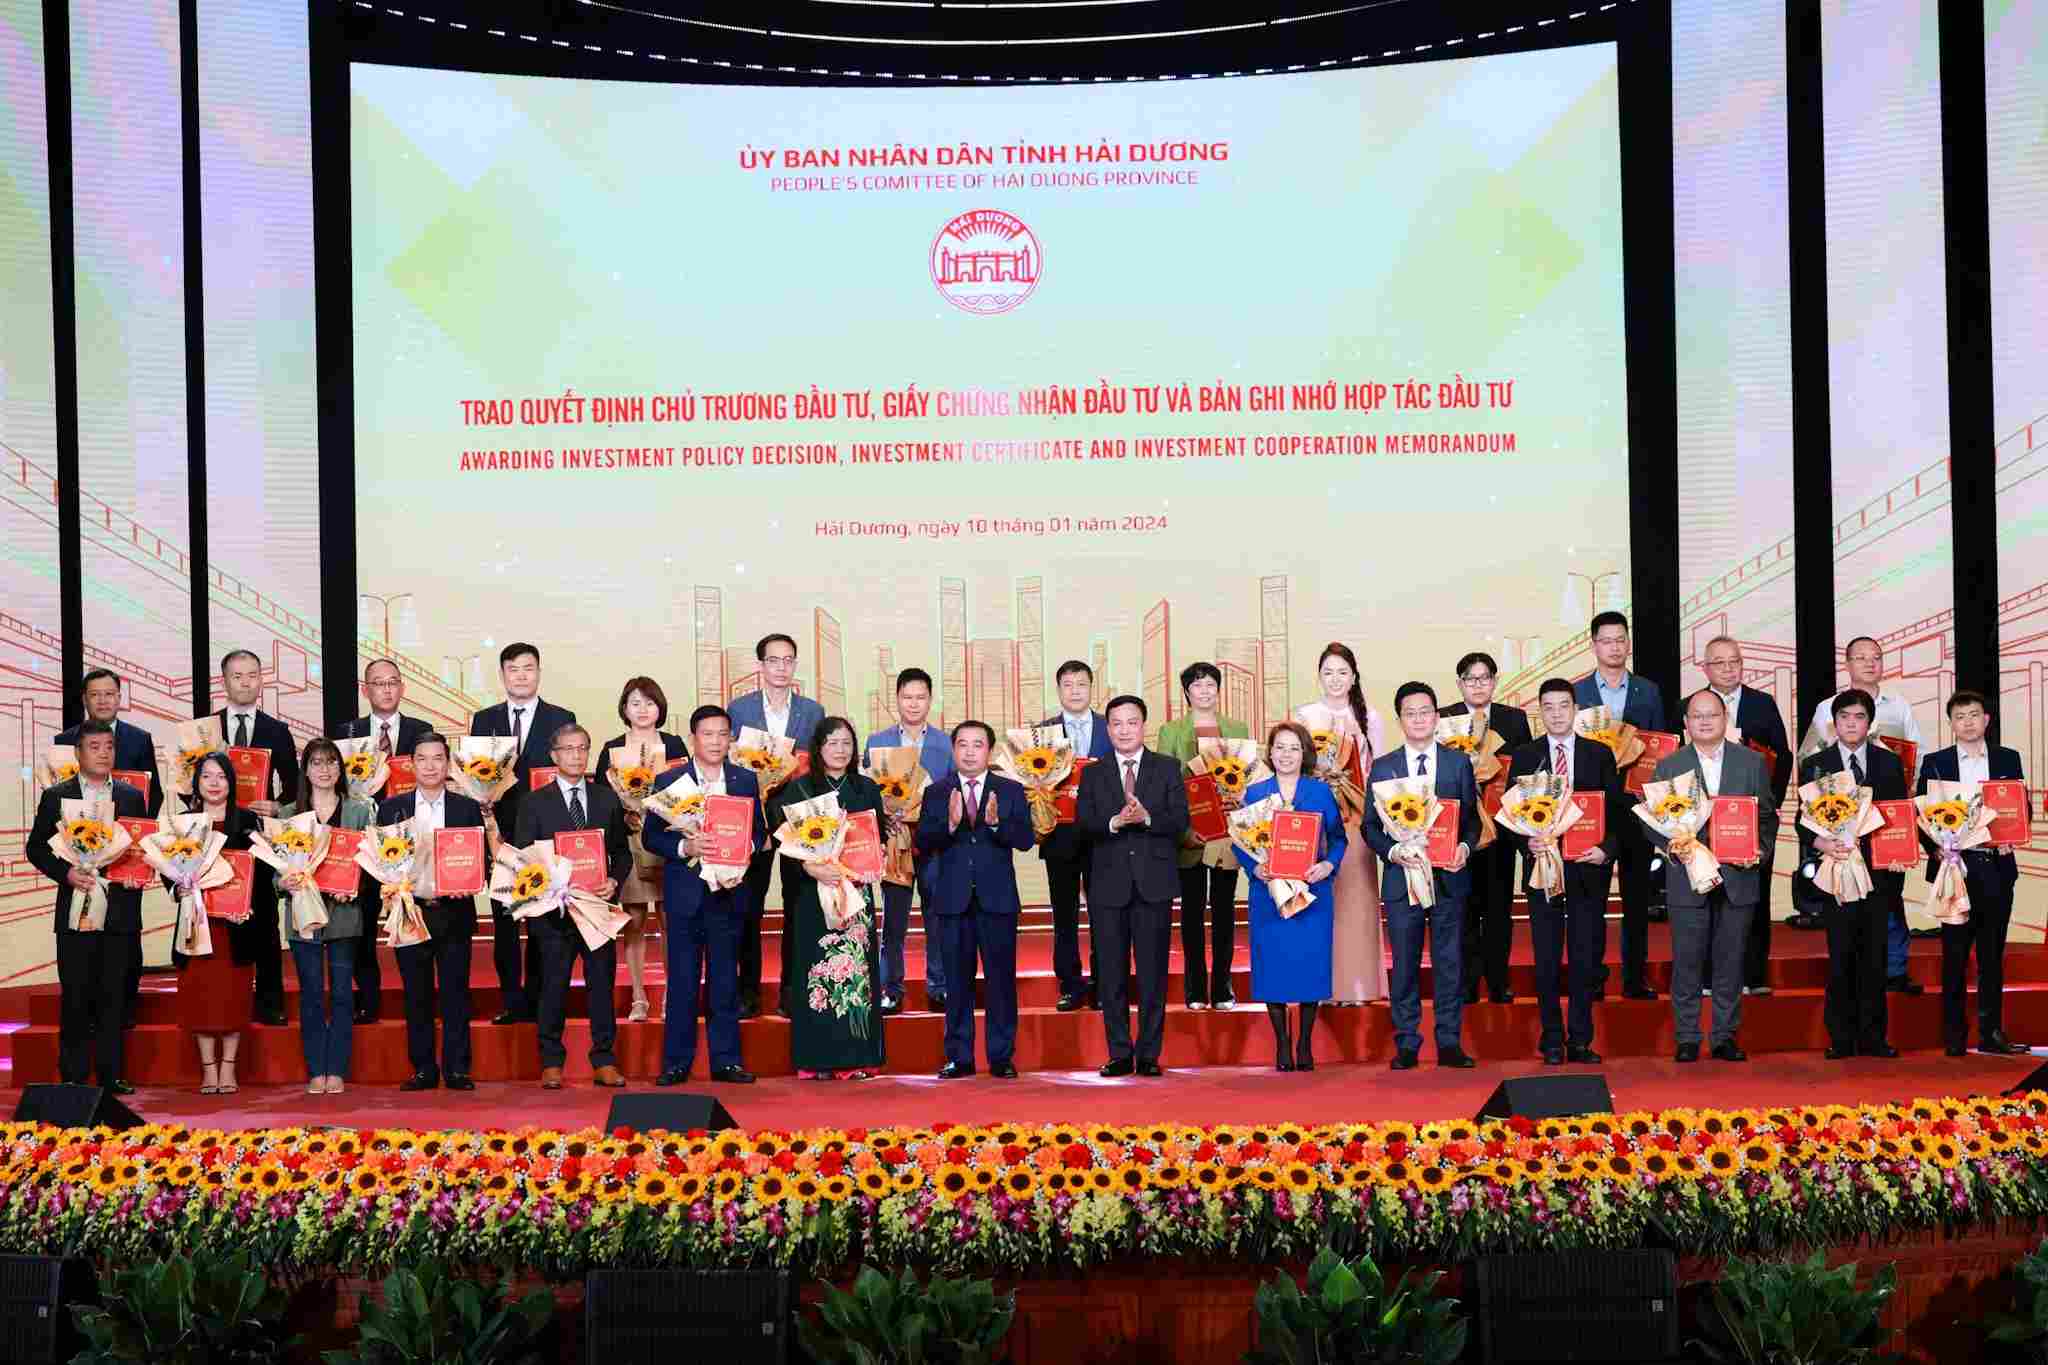 Lãnh đạo tỉnh Hải Dương trao Giấy chứng nhận đầu tư cho một số doanh nghiệp. Ảnh: Hải Nguyễn